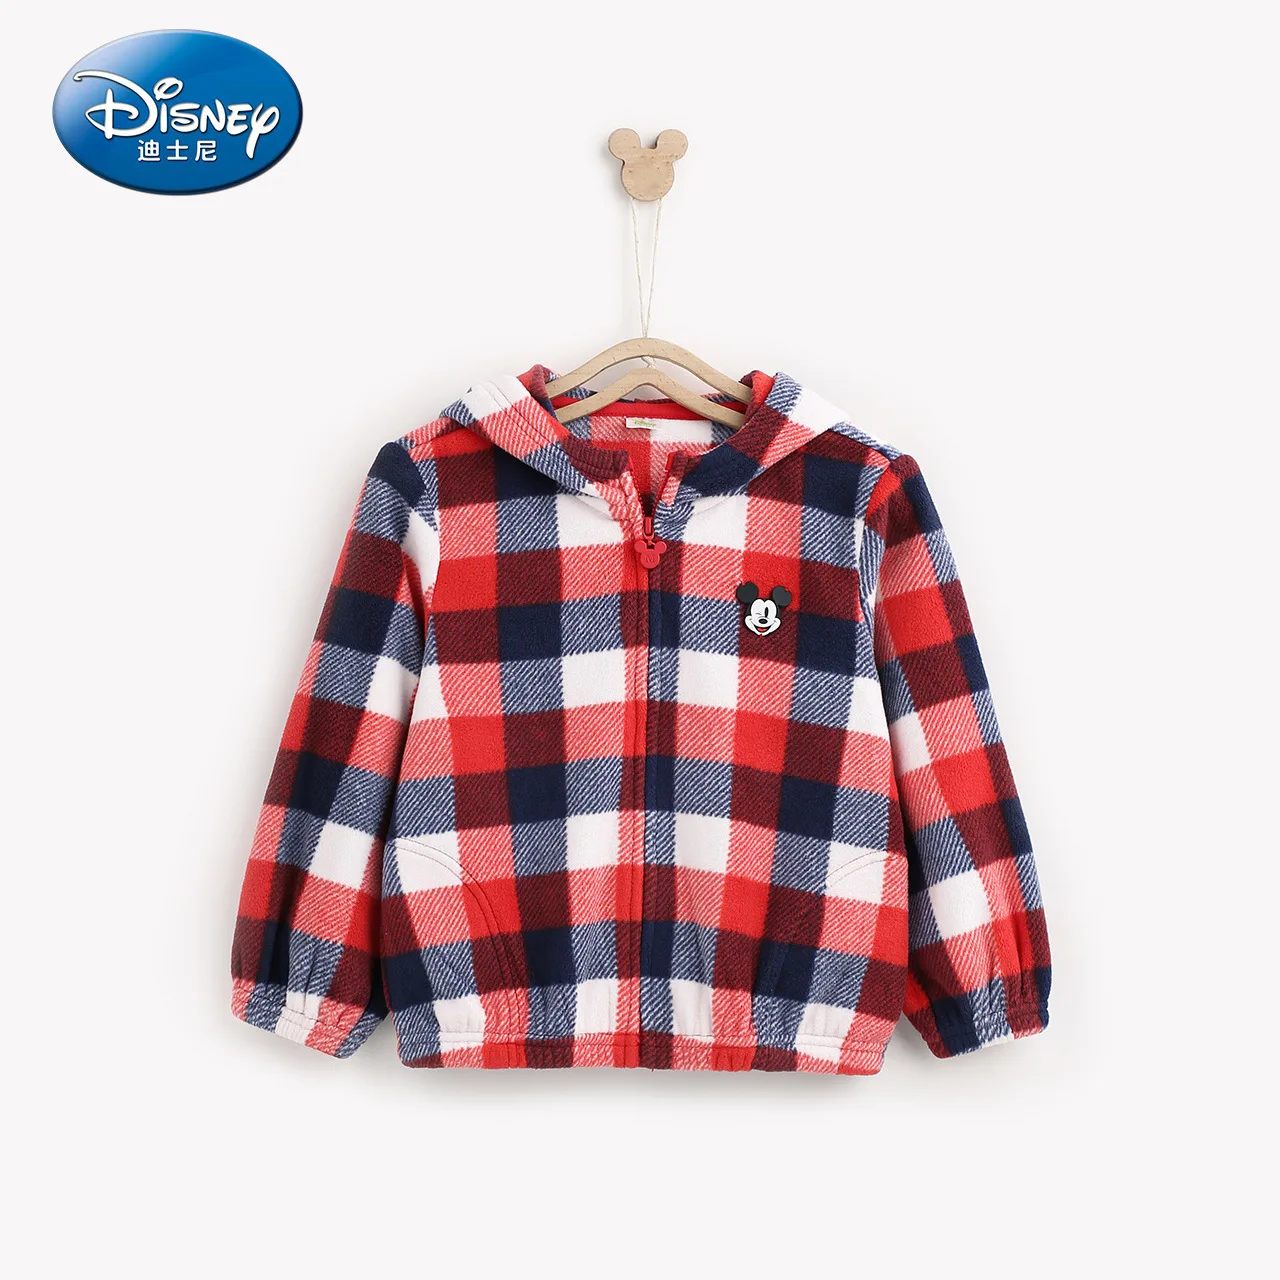 Disney/вязаное бархатное пальто с капюшоном для маленьких мальчиков Новинка года, платье с Микки Маусом куртка для мальчиков детские пальто детские толстовки клетчатый анорак - Цвет: 2